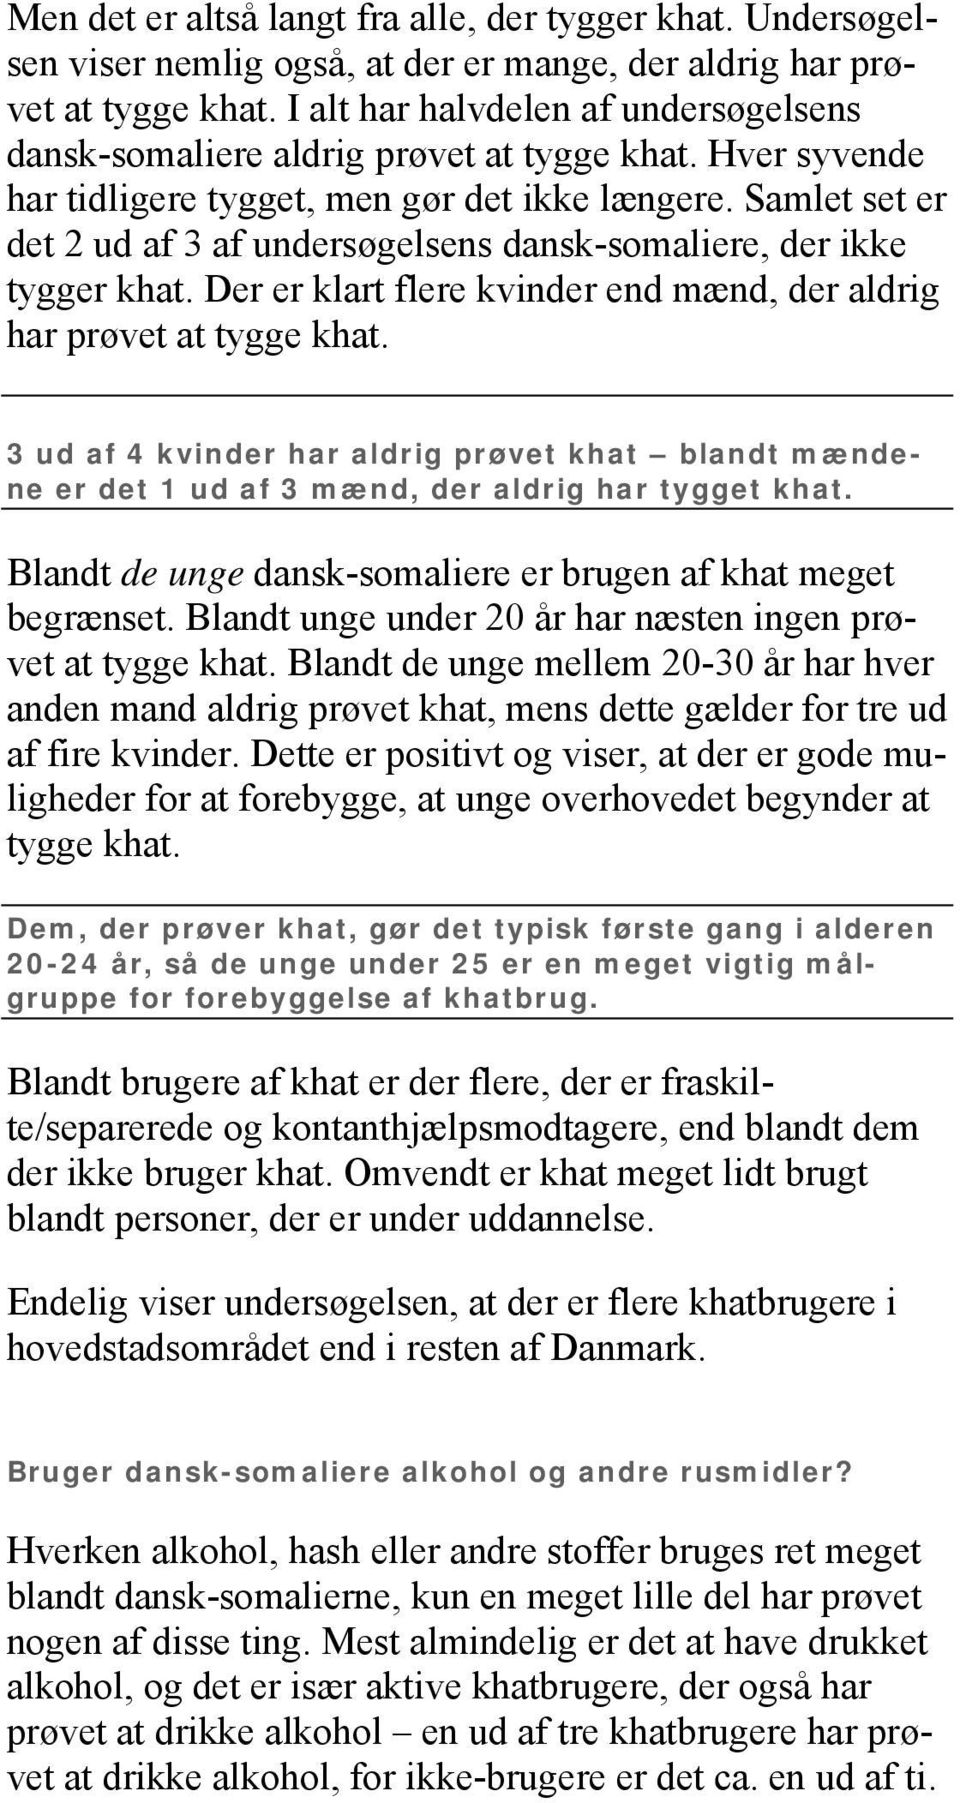 Samlet set er det 2 ud af 3 af undersøgelsens dansk-somaliere, der ikke tygger khat. Der er klart flere kvinder end mænd, der aldrig har prøvet at tygge khat.